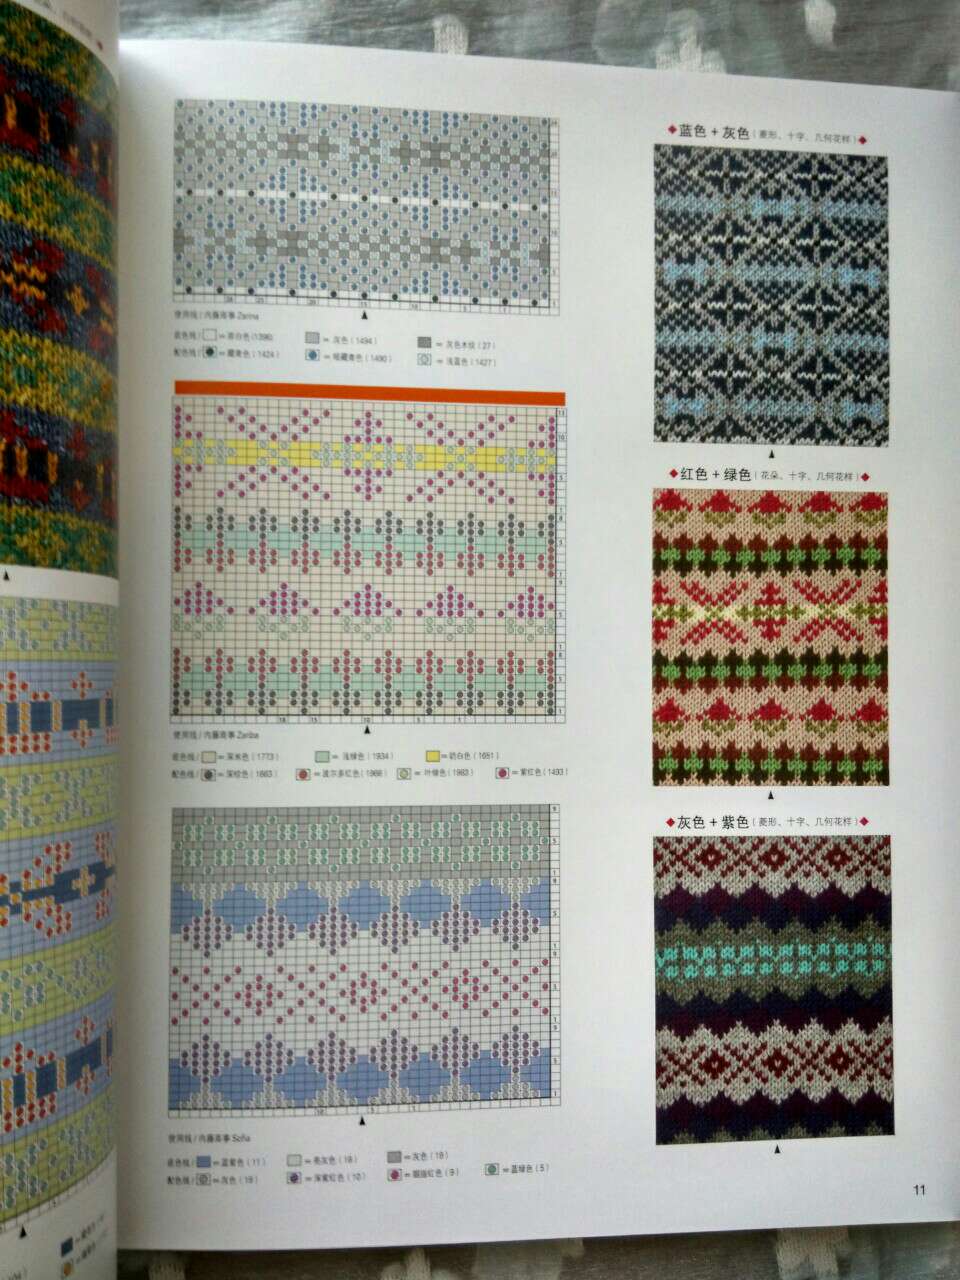 看中「费尔岛的花样设计及配色」买的，内容丰富、色彩搭配出彩、附录的作品编织方法也完整。